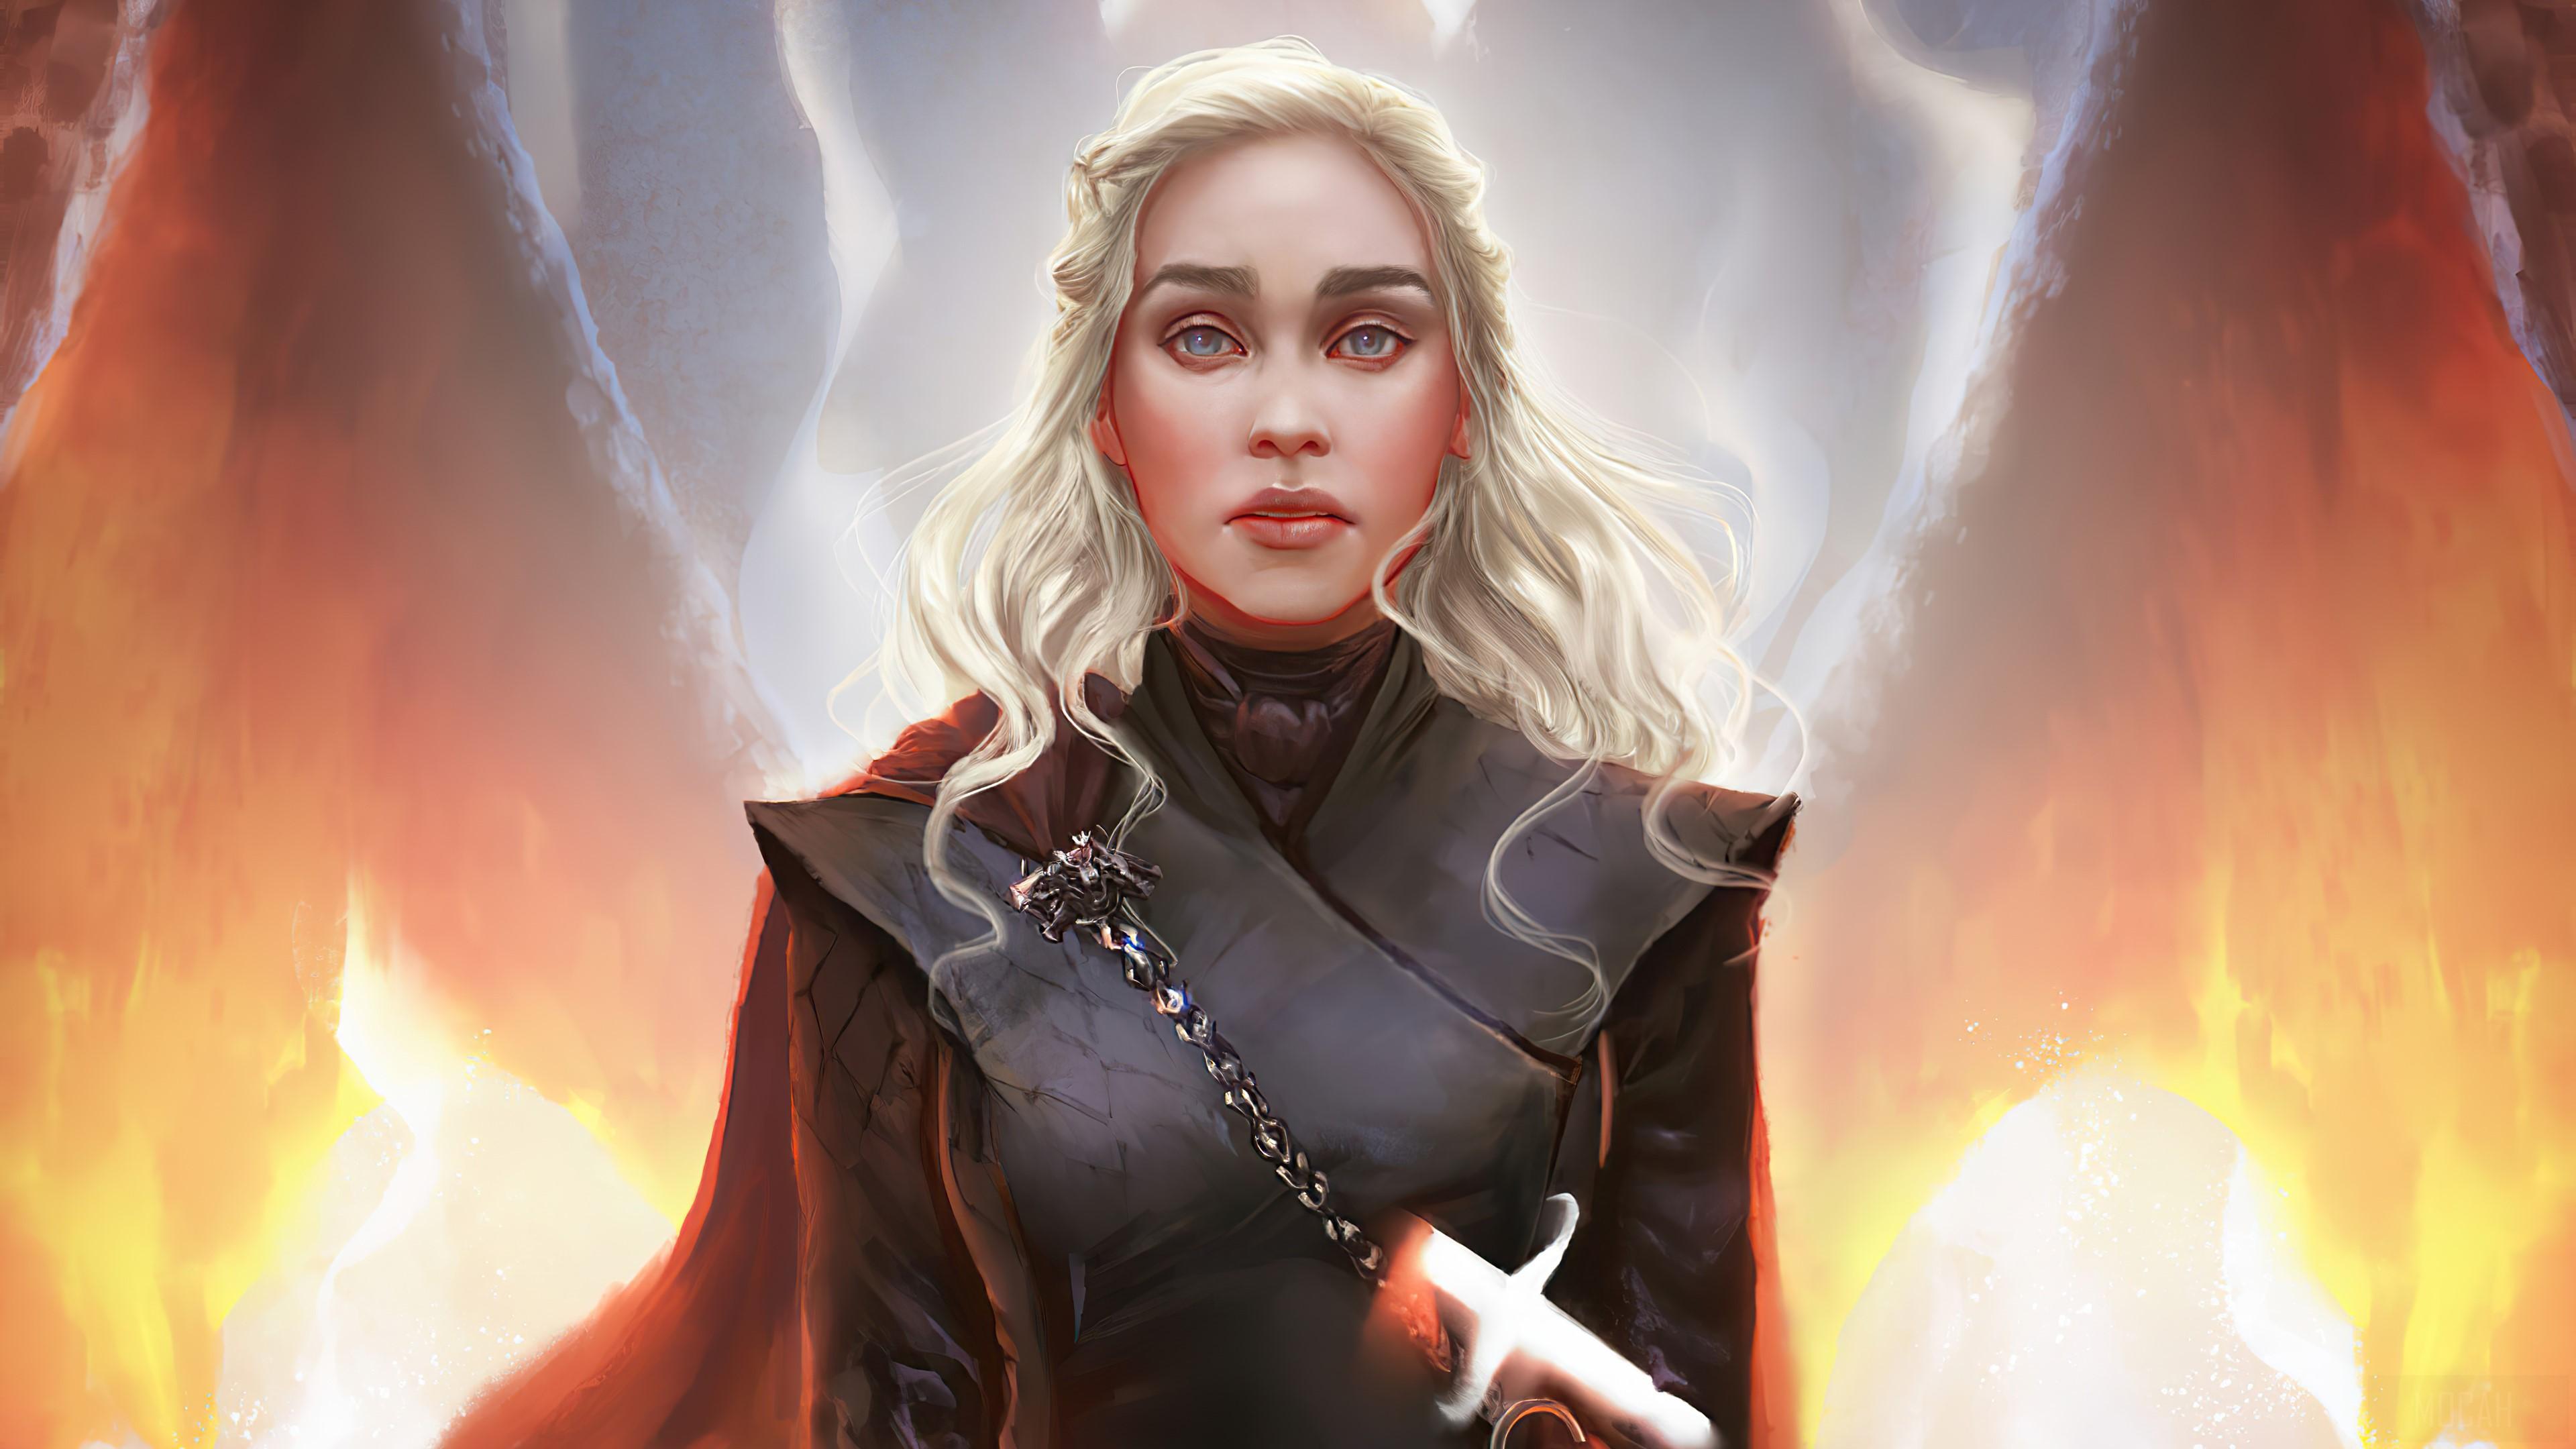 HD wallpaper, Daenerys Targaryen The Betrayed Queen 4K